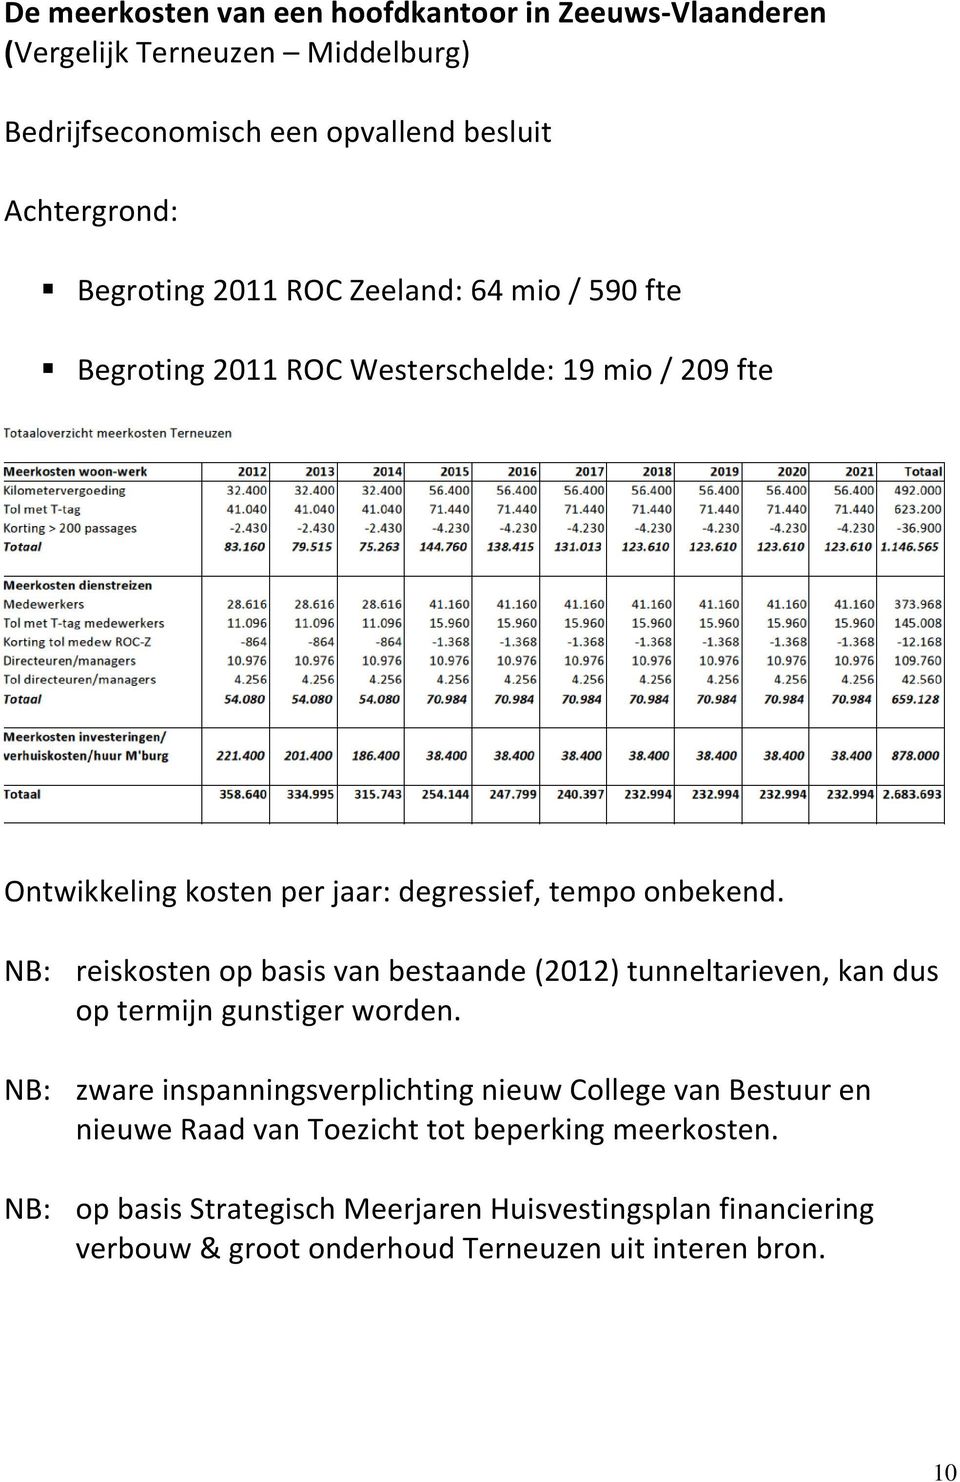 NB: reiskosten op basis van bestaande (2012) tunneltarieven, kan dus op termijn gunstiger worden.